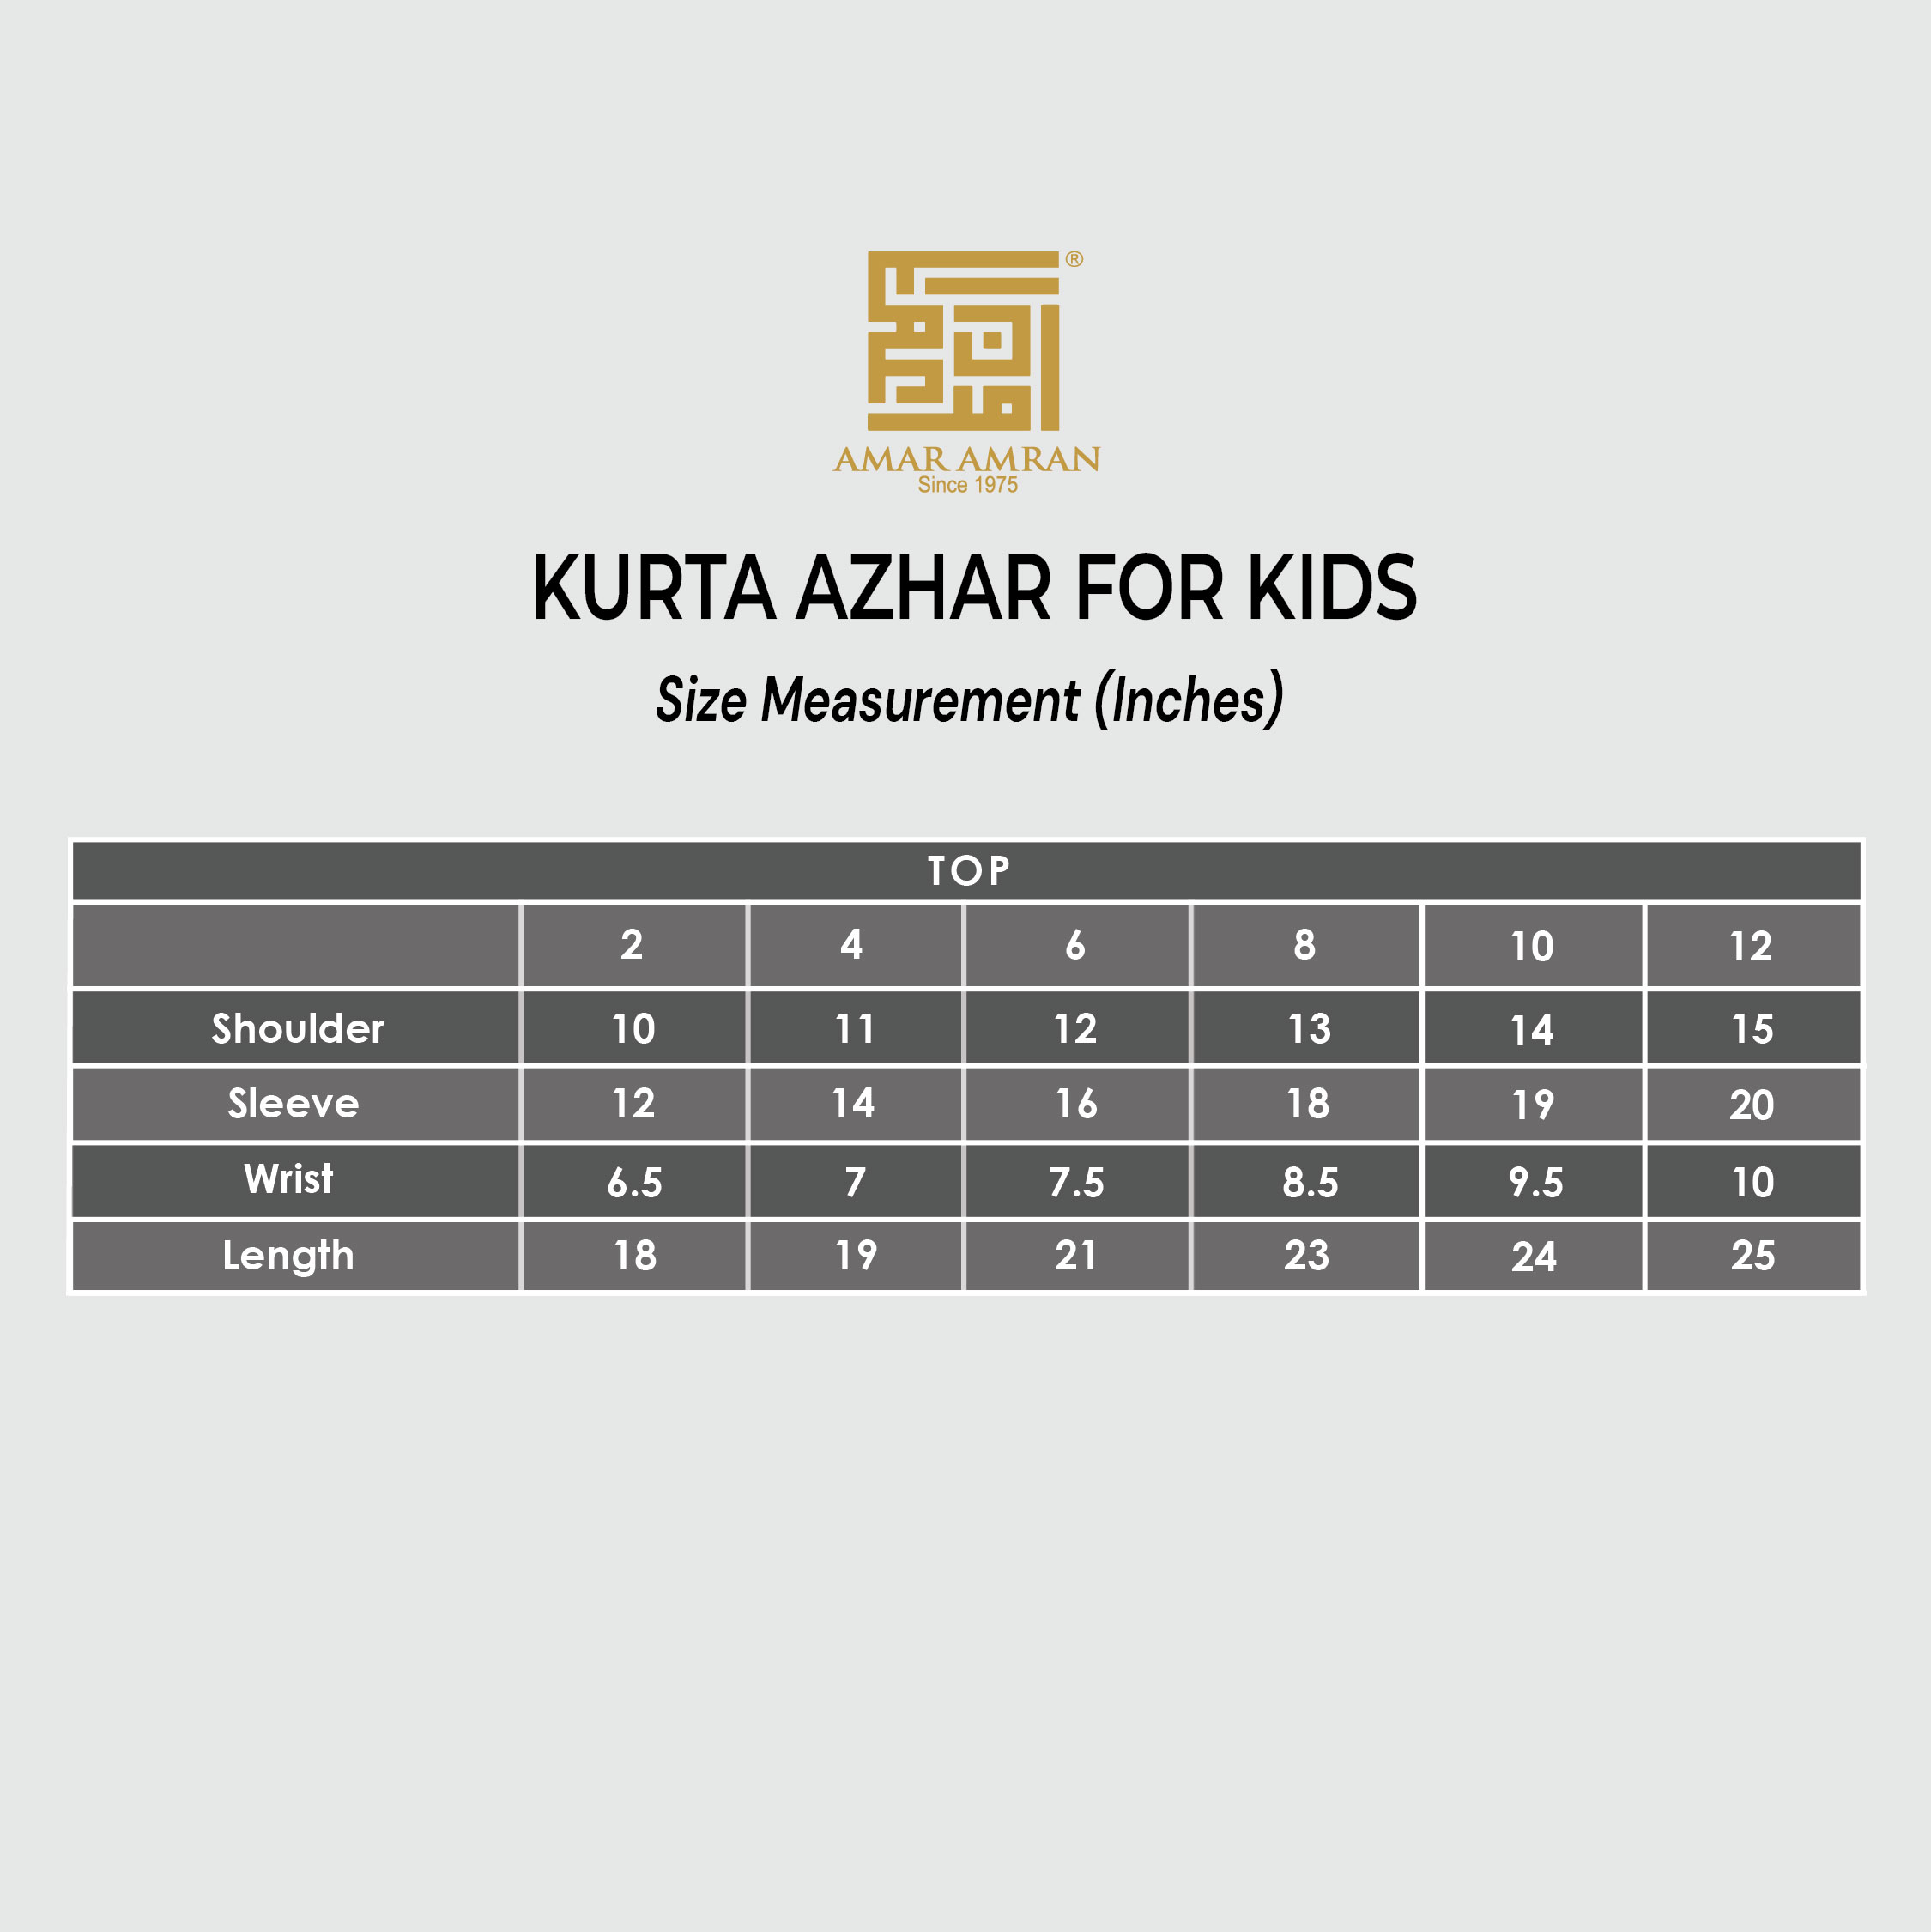 KURTA AZHAR FOR KIDS.jpg